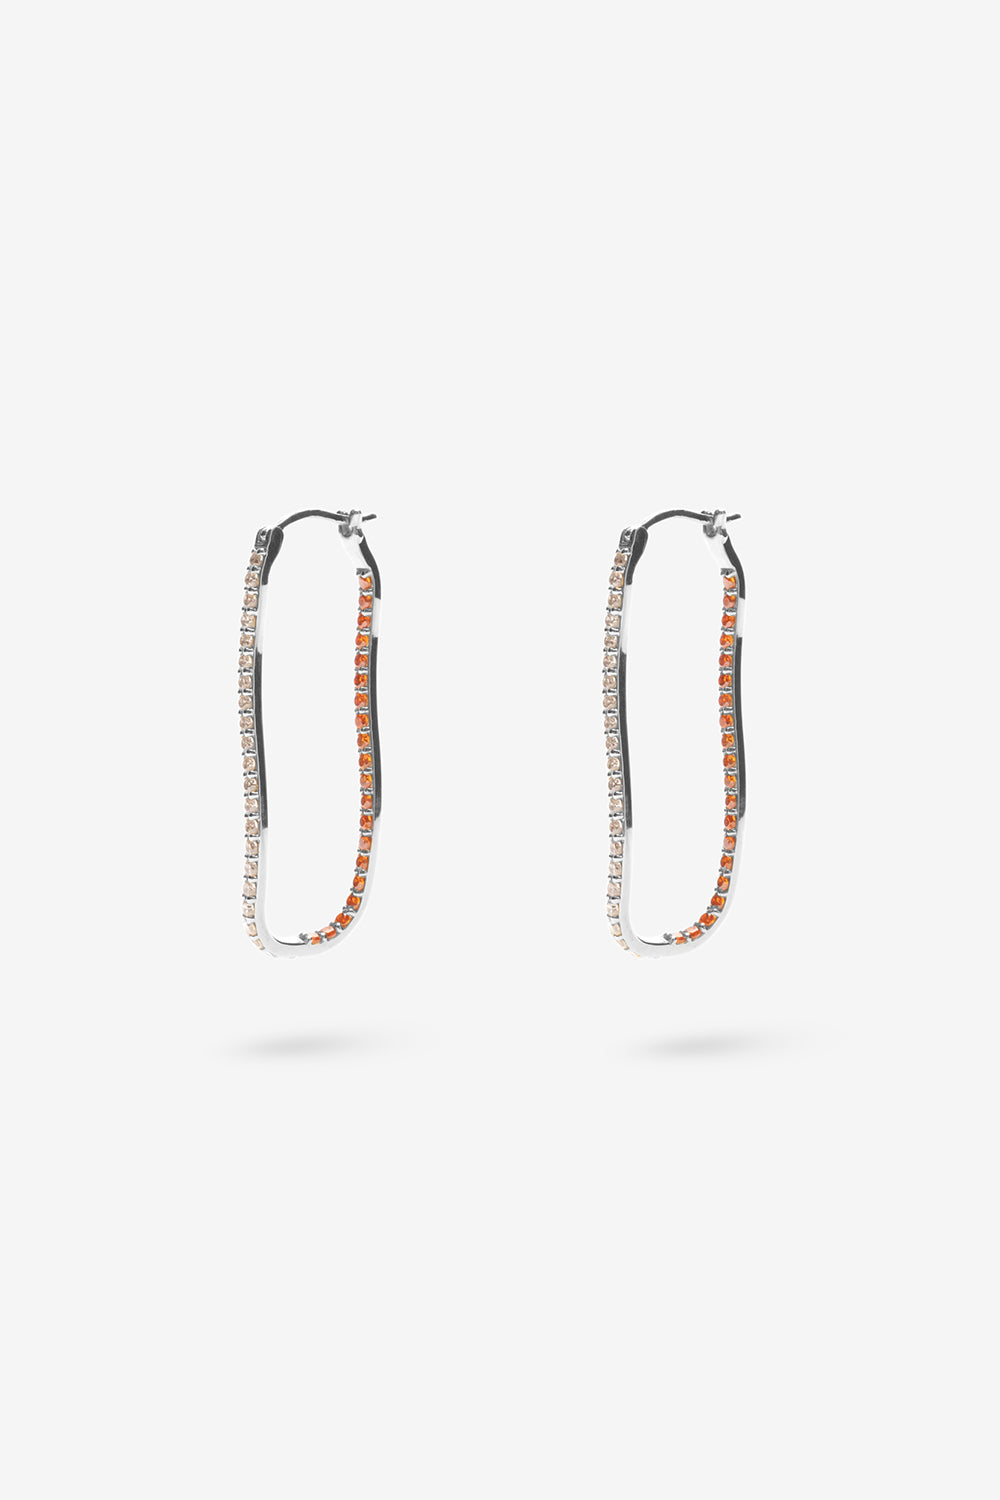 Flash Jewellery Fiasco Paved Hoop Earrings with Tangerine Gemstones in Sterling Silver